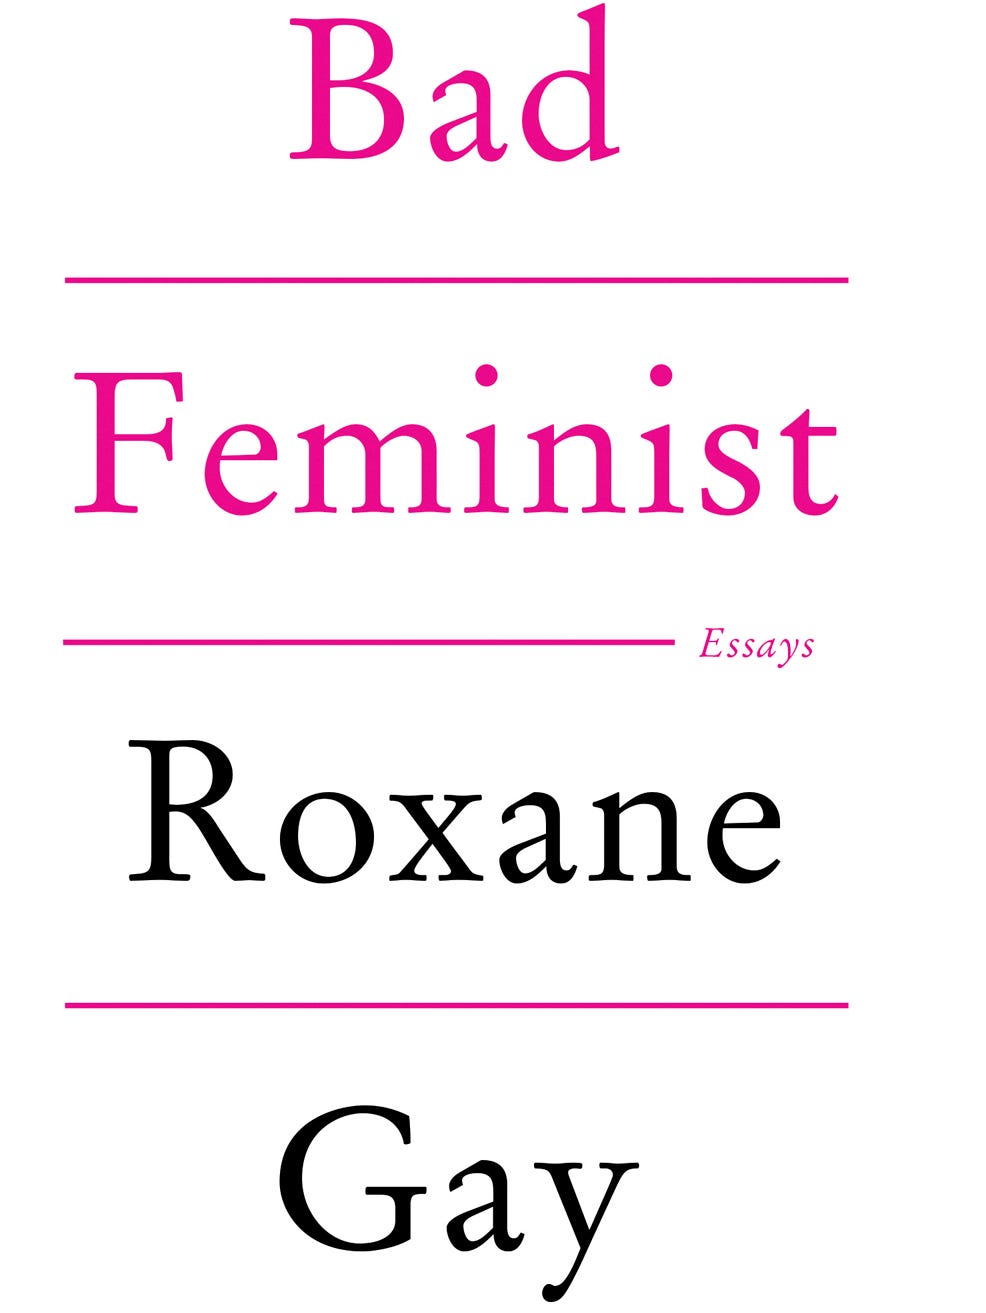 roxane gay bad feminist essay people